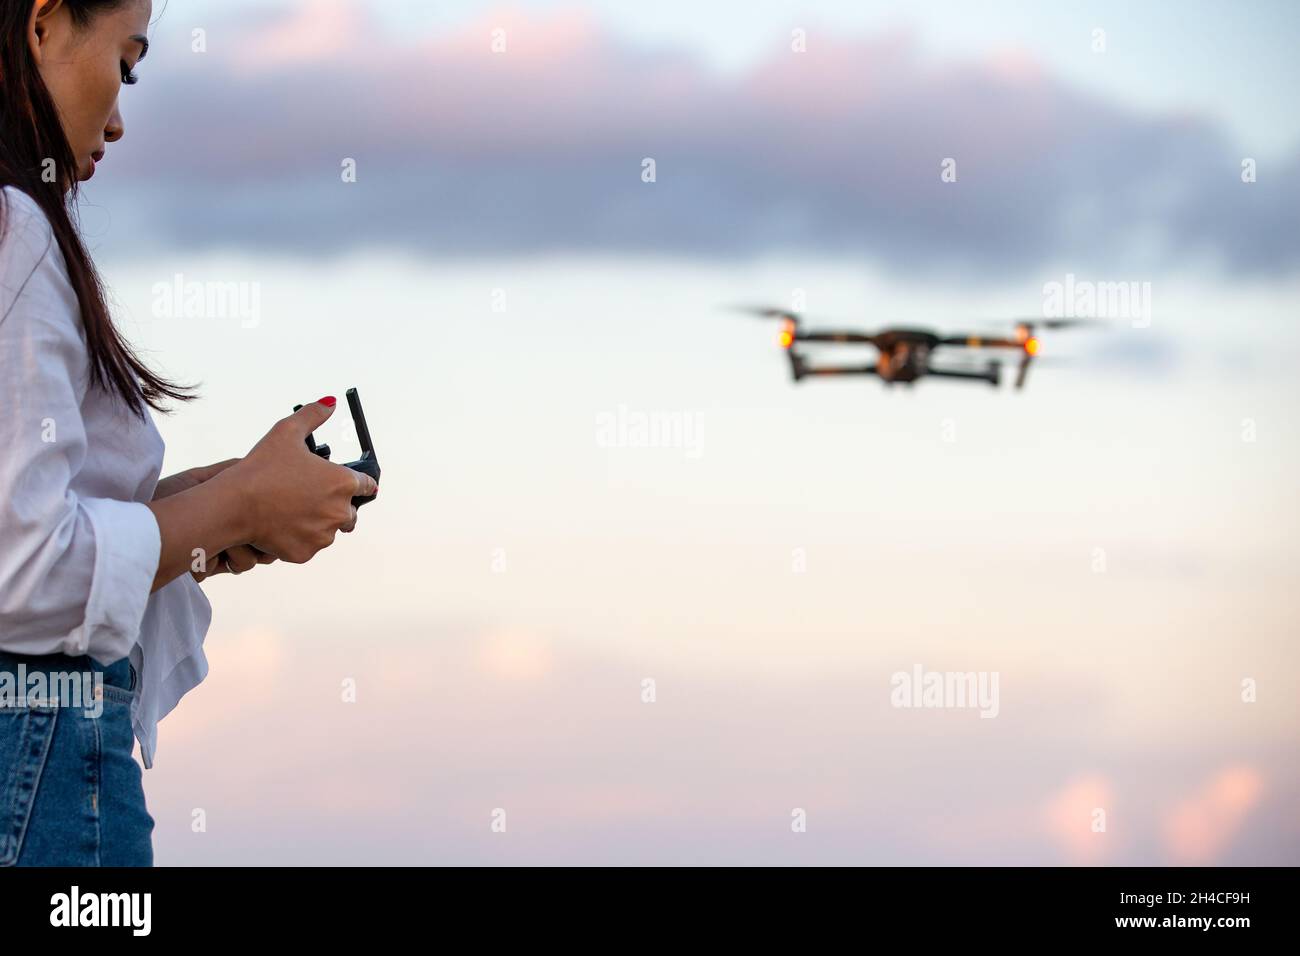 Una giovane donna che opera un drone UAV Foto Stock